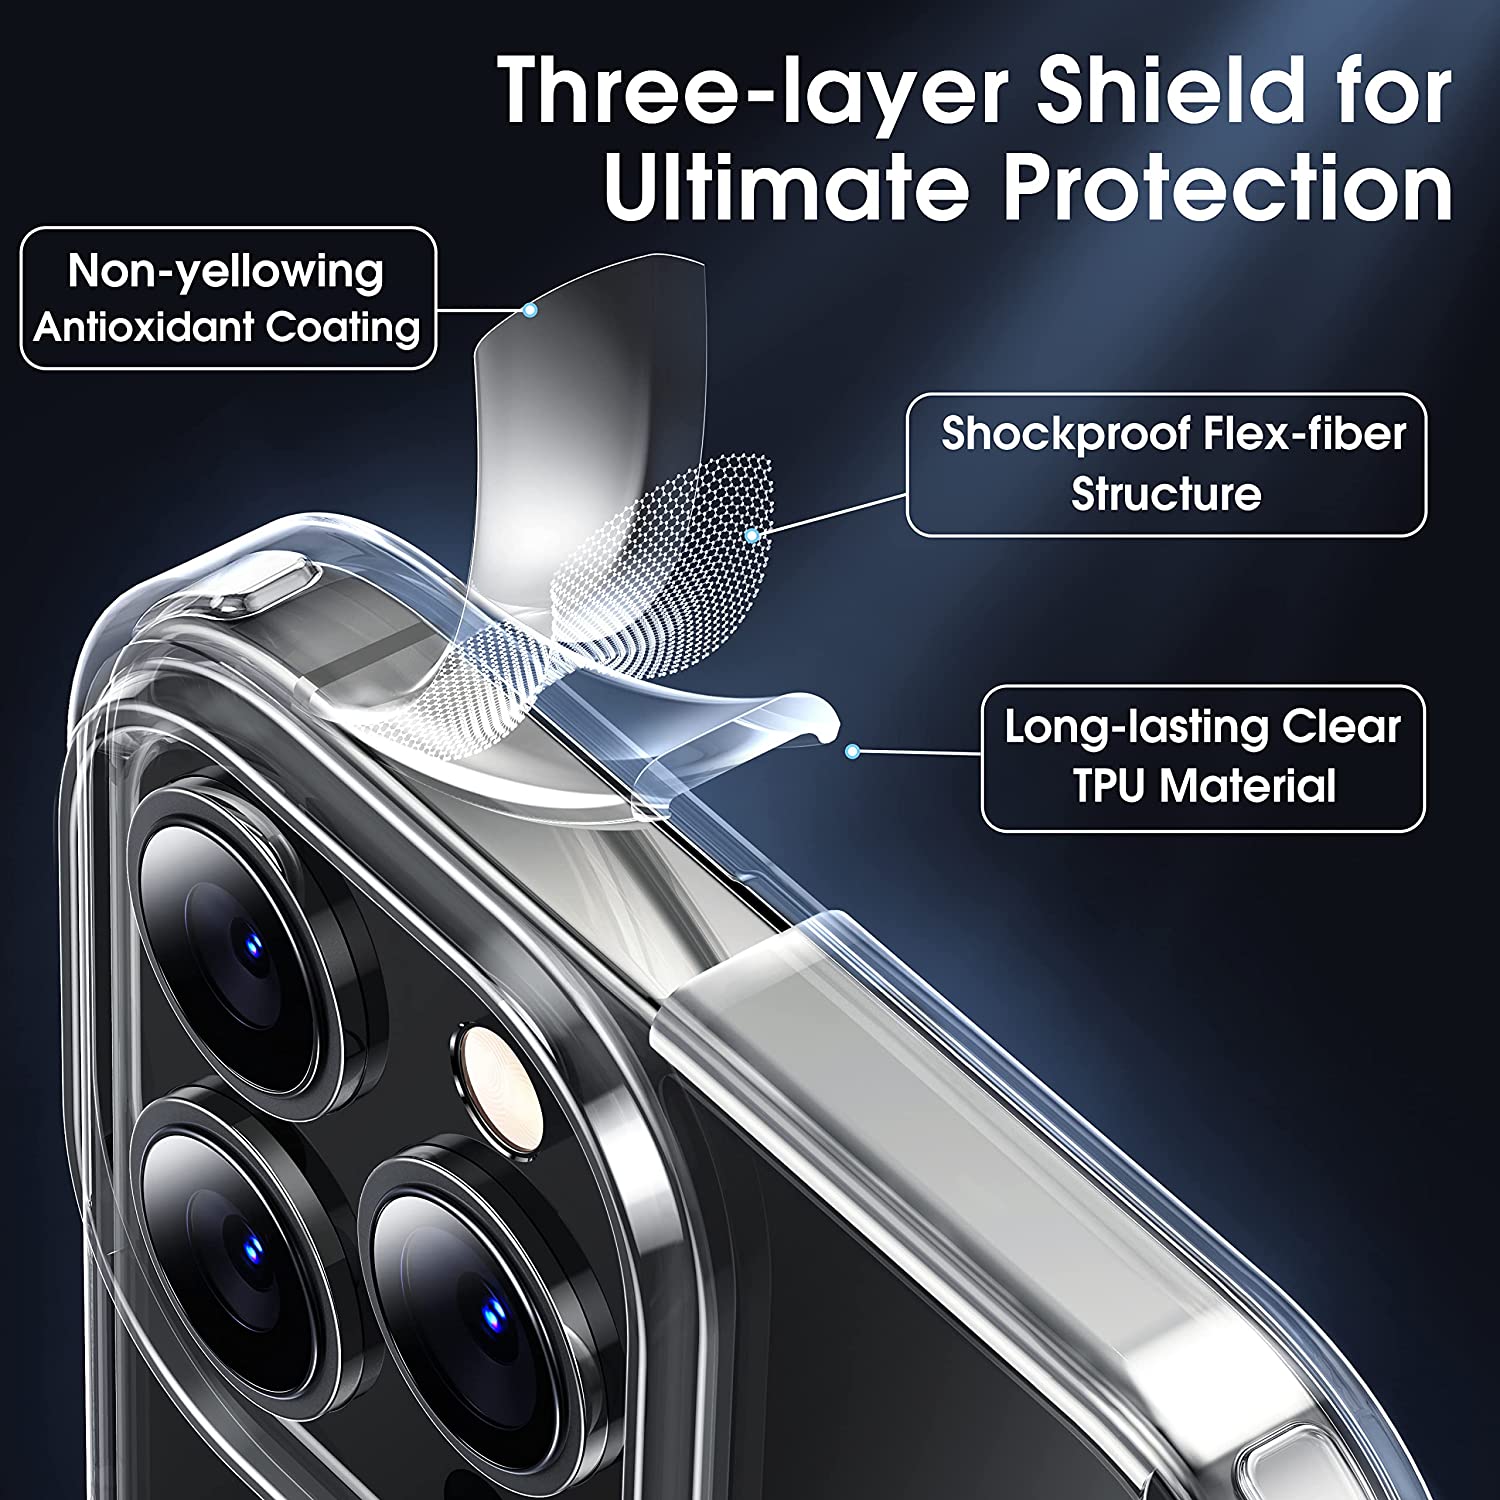 Ốp lưng chống sốc bảo vệ camera cho iPhone 13 / 13 Pro / 13 Pro Max hiệu Memumi Glitter siêu mỏng 1mm Độ trong tuyệt đối, chống trầy xước, chống ố vàng, tản nhiệt tốt - hàng nhập khẩu